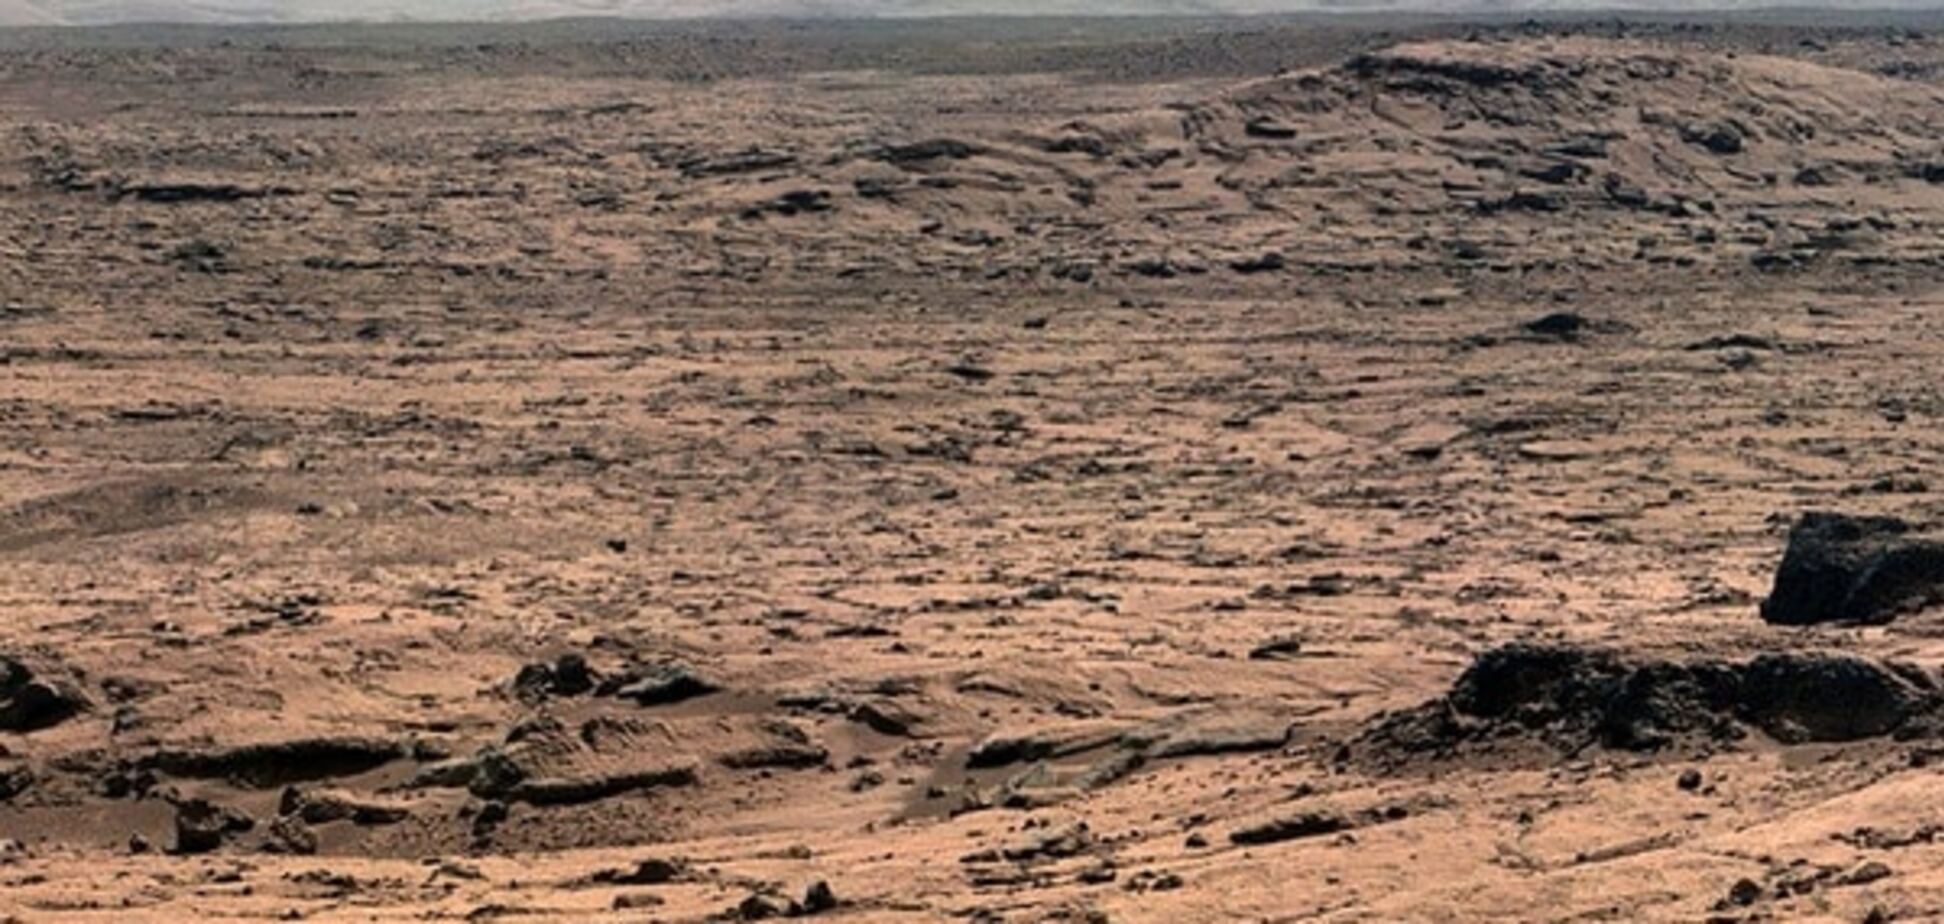 Вже скоро: стало відомо, коли на Марс вирушить перша людина